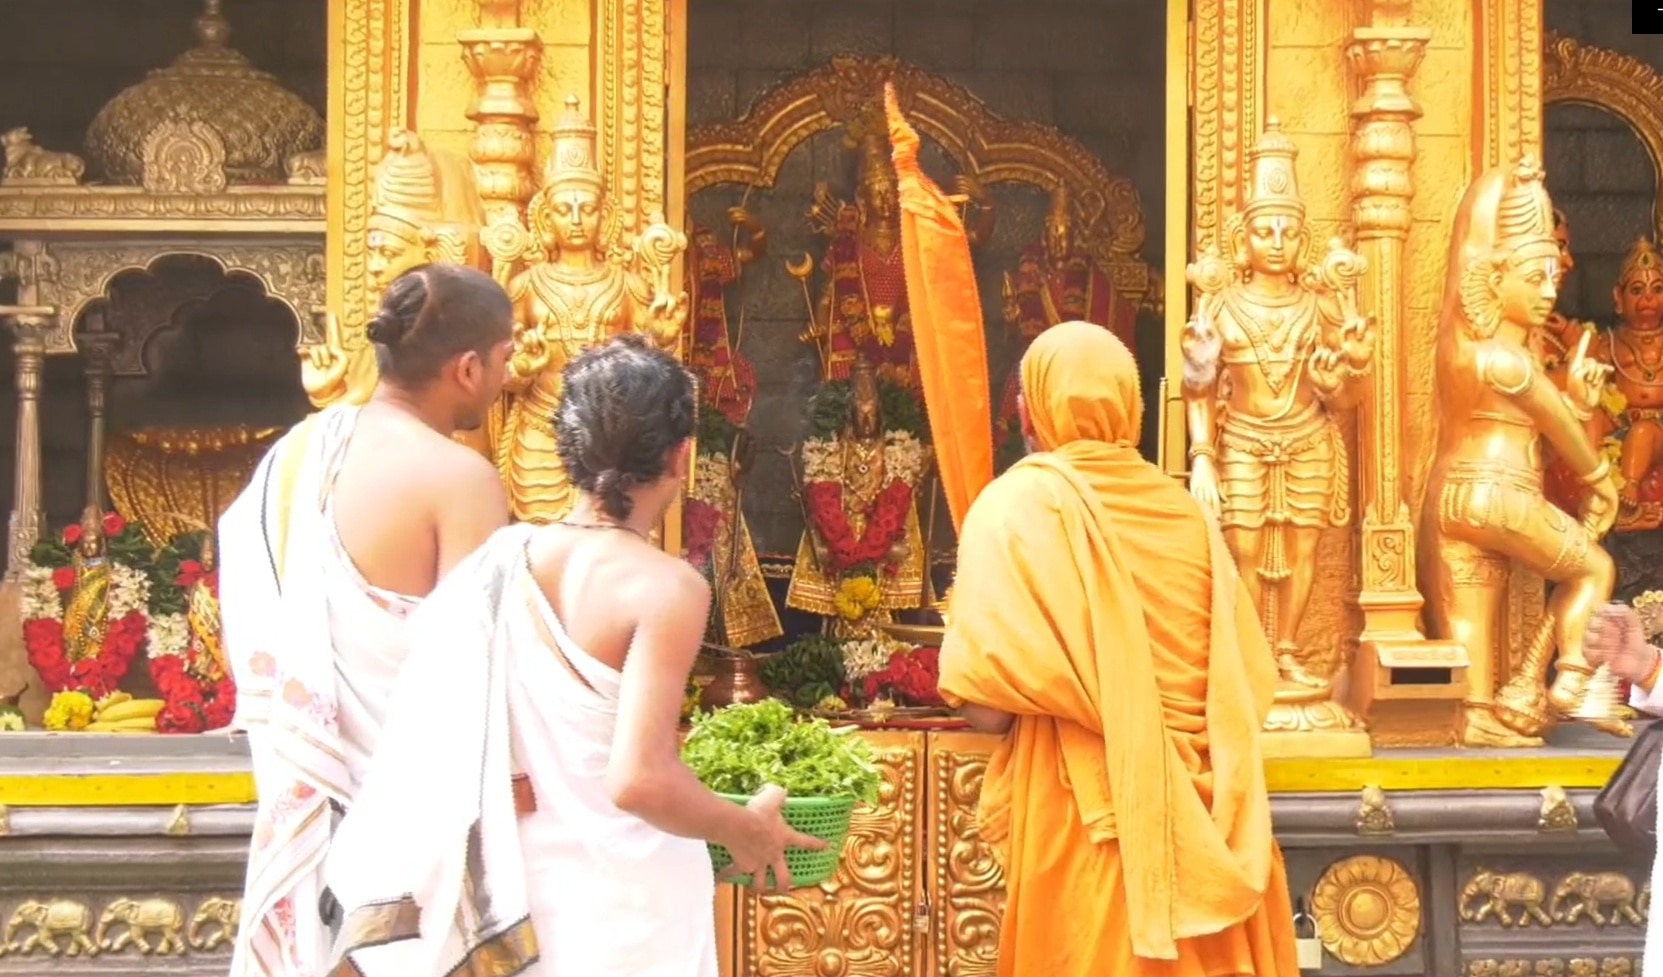 Tiruamala: శారదాపీఠం దొంగ పీఠం, హనుమంతుని జన్మస్థలం పేరుతో టీటీడీ దైవద్రోహం చేస్తుంది : గోవిందానంద సరస్వతి